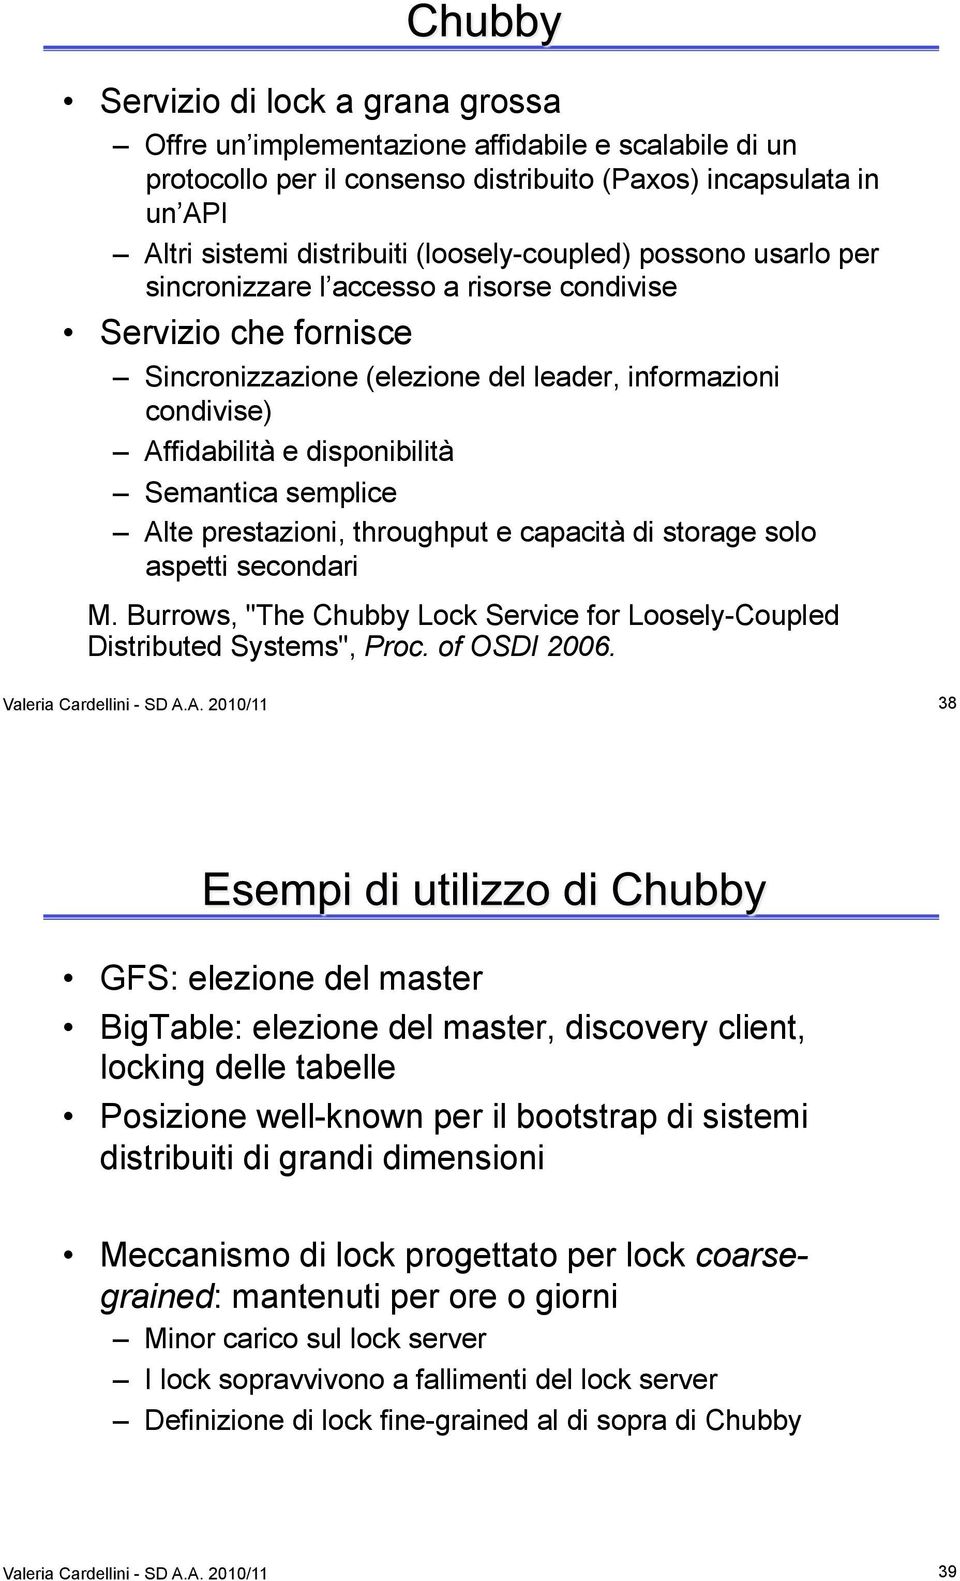 Alte prestazioni, throughput e capacità di storage solo aspetti secondari M. Burrows, "The Chubby Lock Service for Loosely-Coupled Distributed Systems", Proc. of OSDI 2006. Valeria Cardellini - SD A.